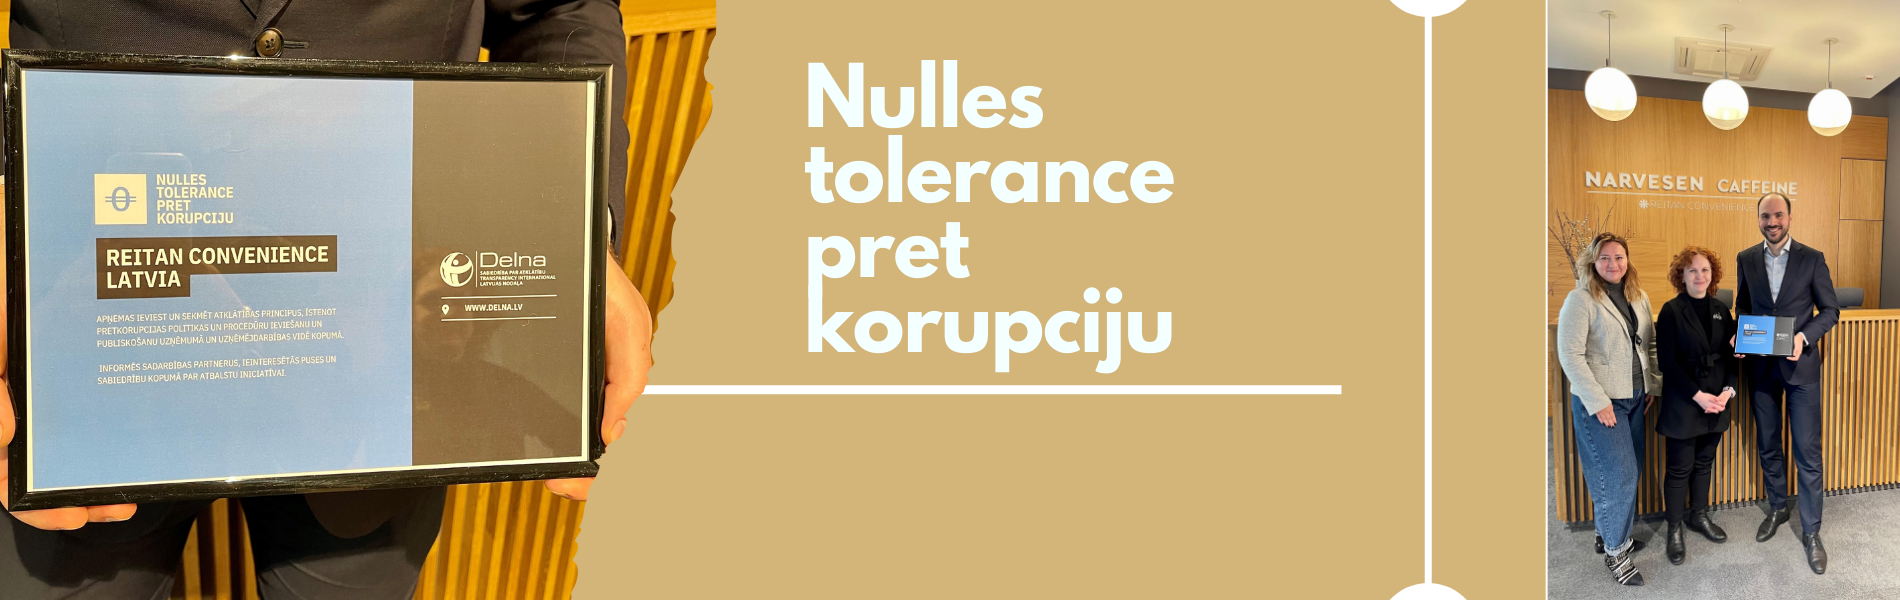 Nulles tolerance pret korupciju (2)